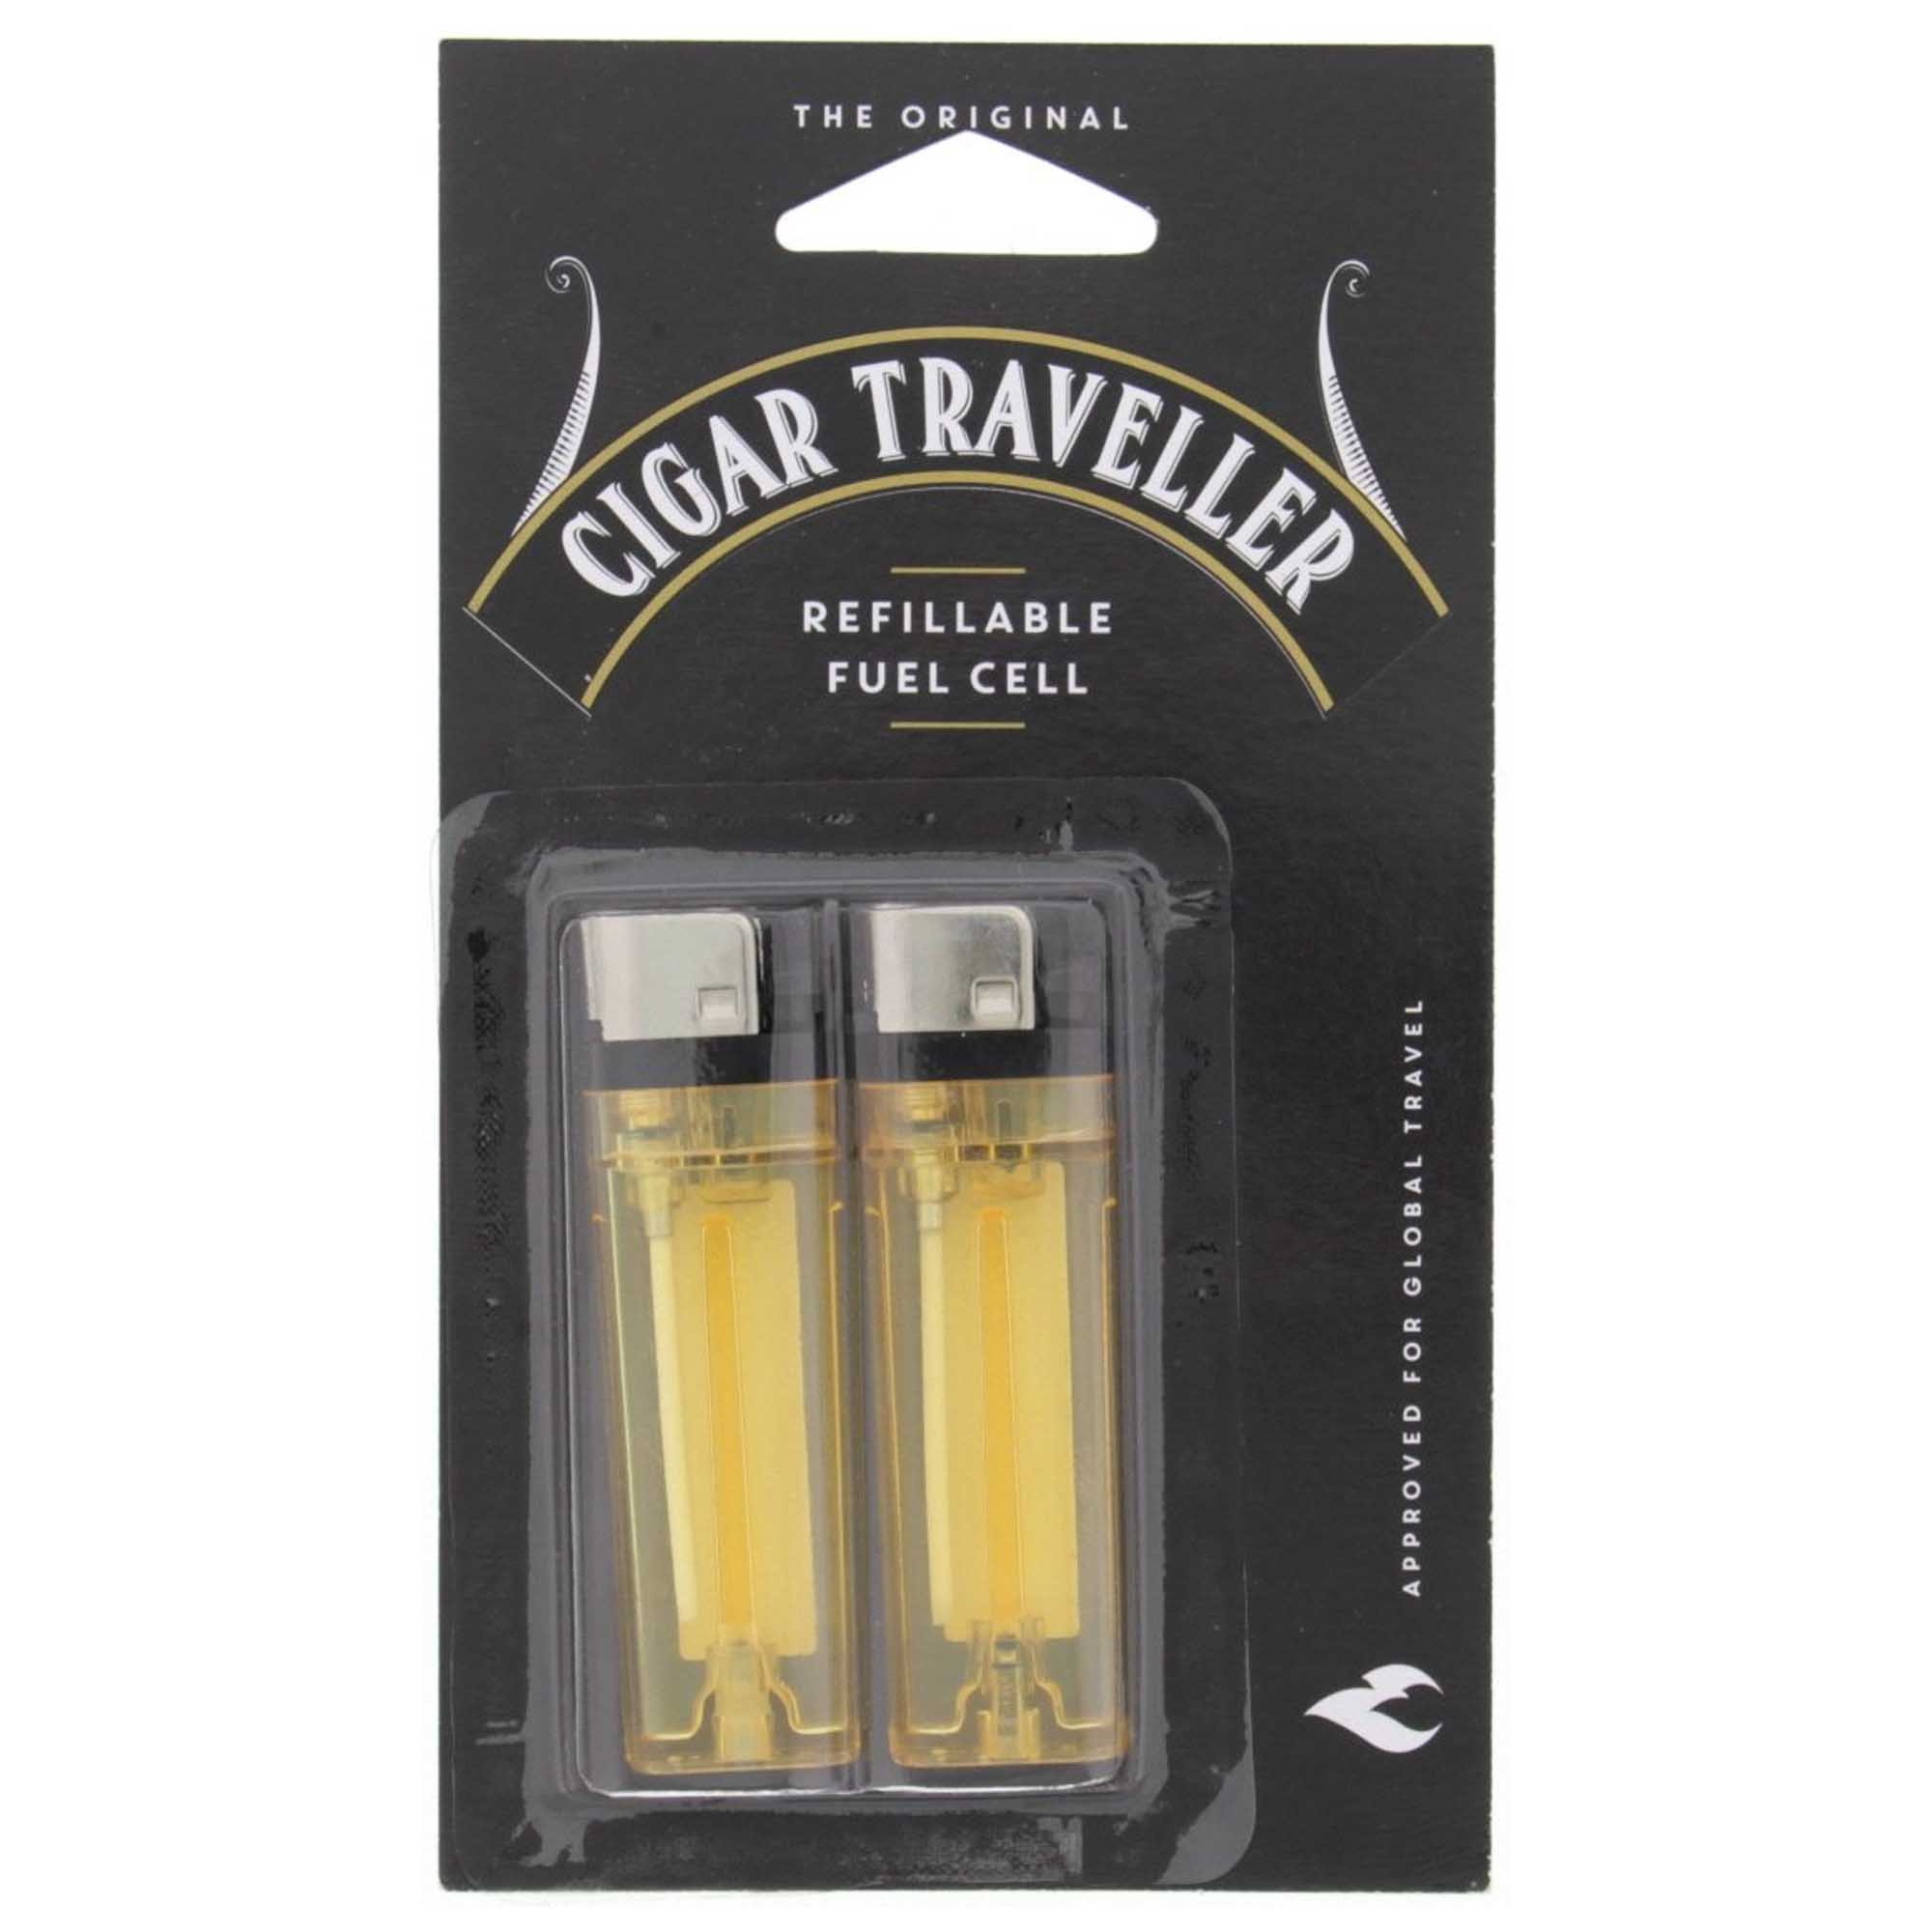 Cigar Traveler double refills pack